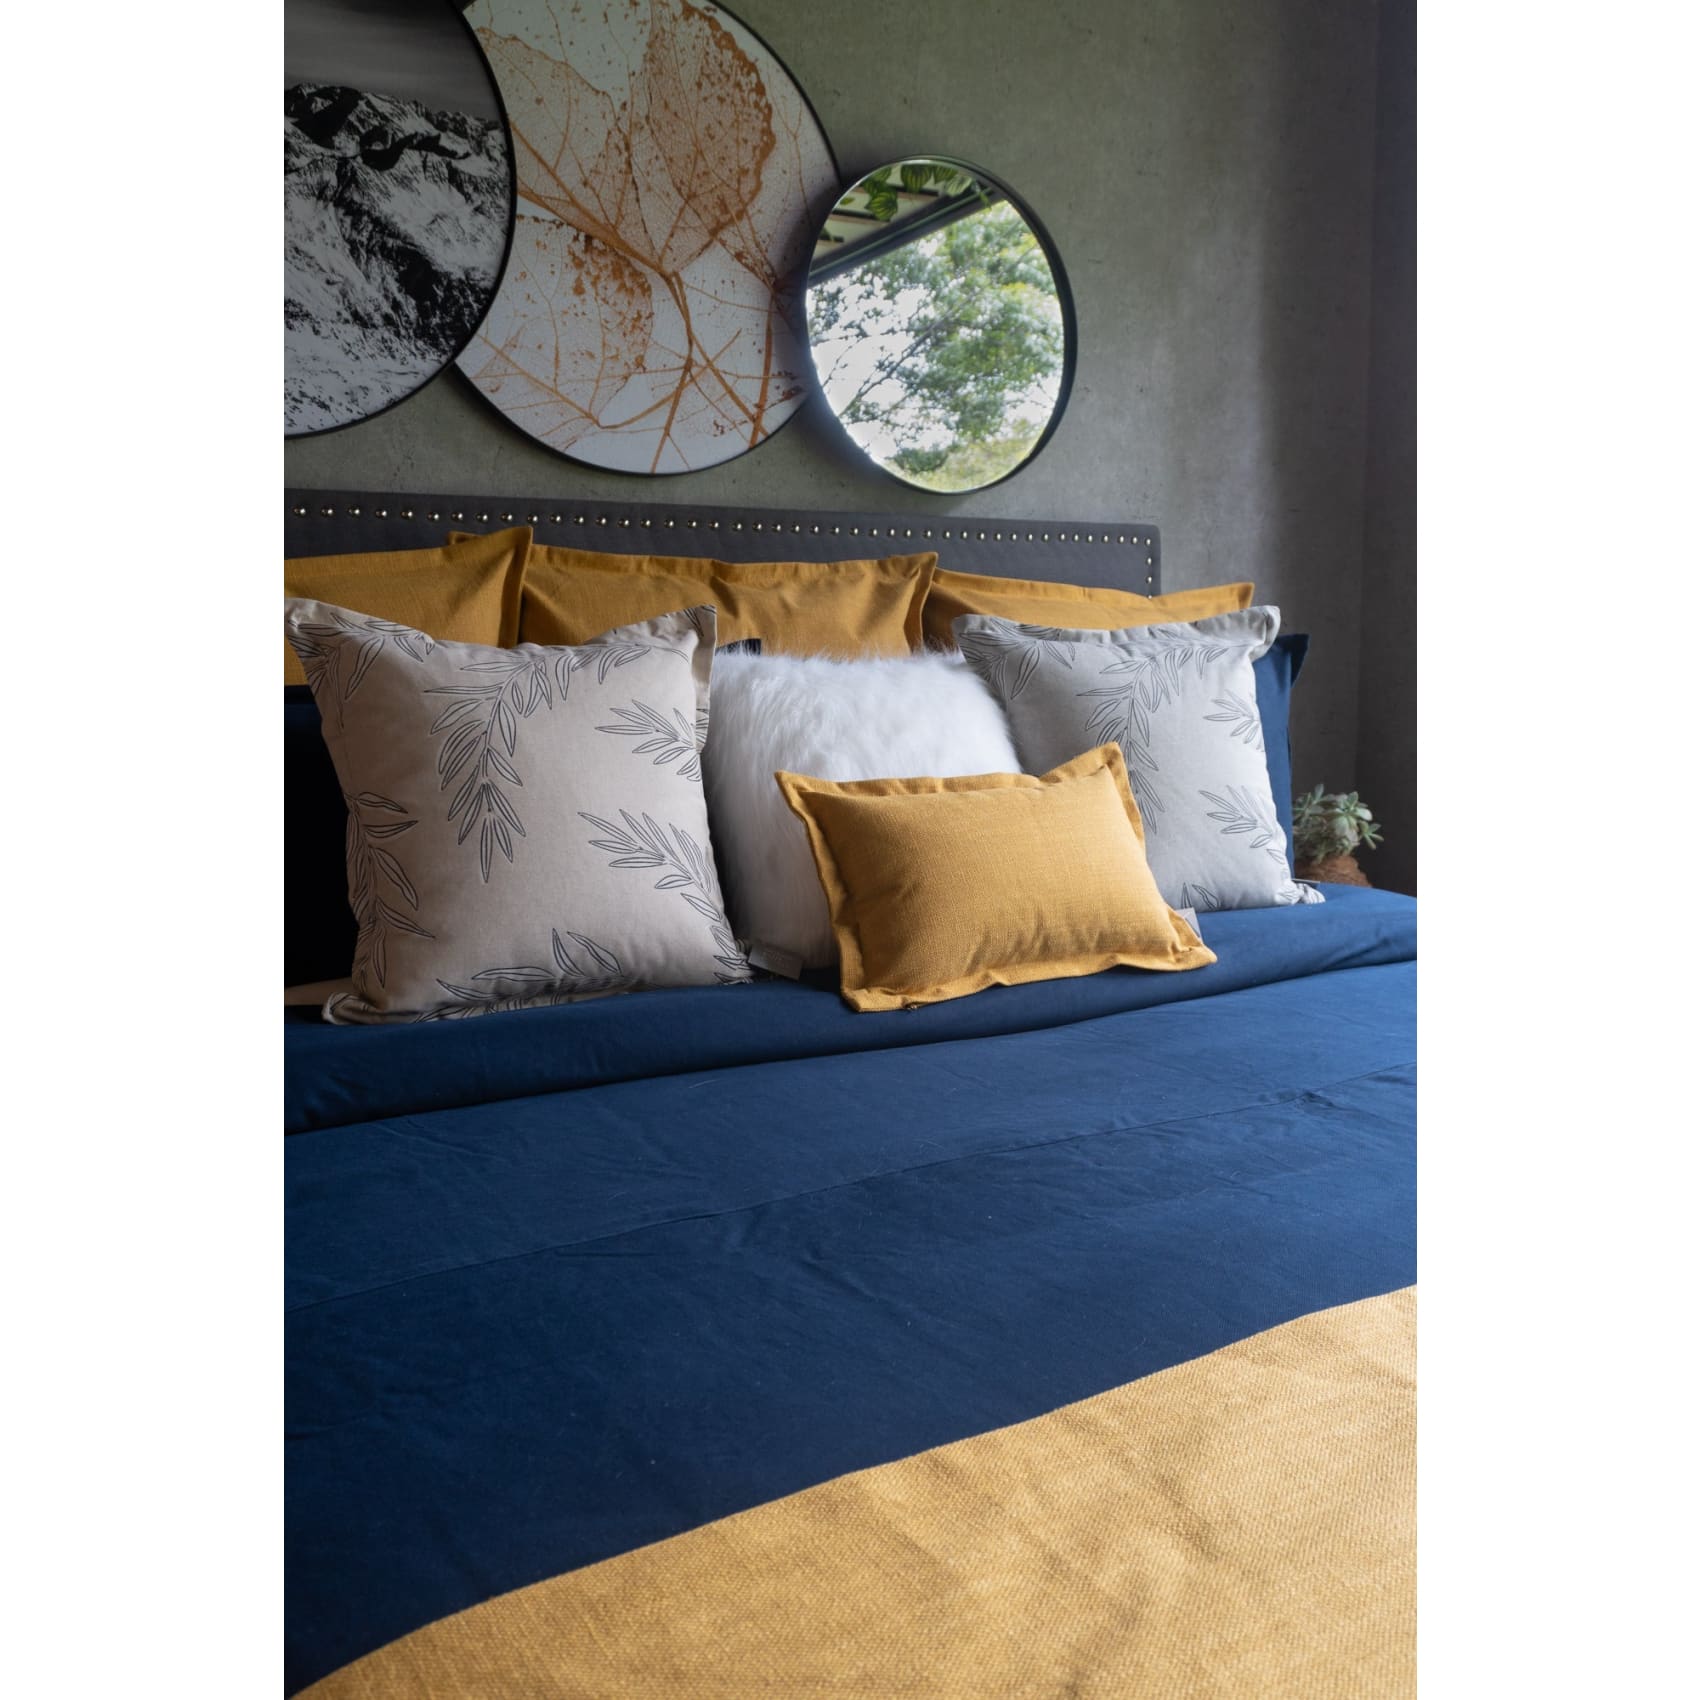 Set Duvet Marsella Navy, decorativo, plumón, cama, habitación, acolchado, edredon, duvet